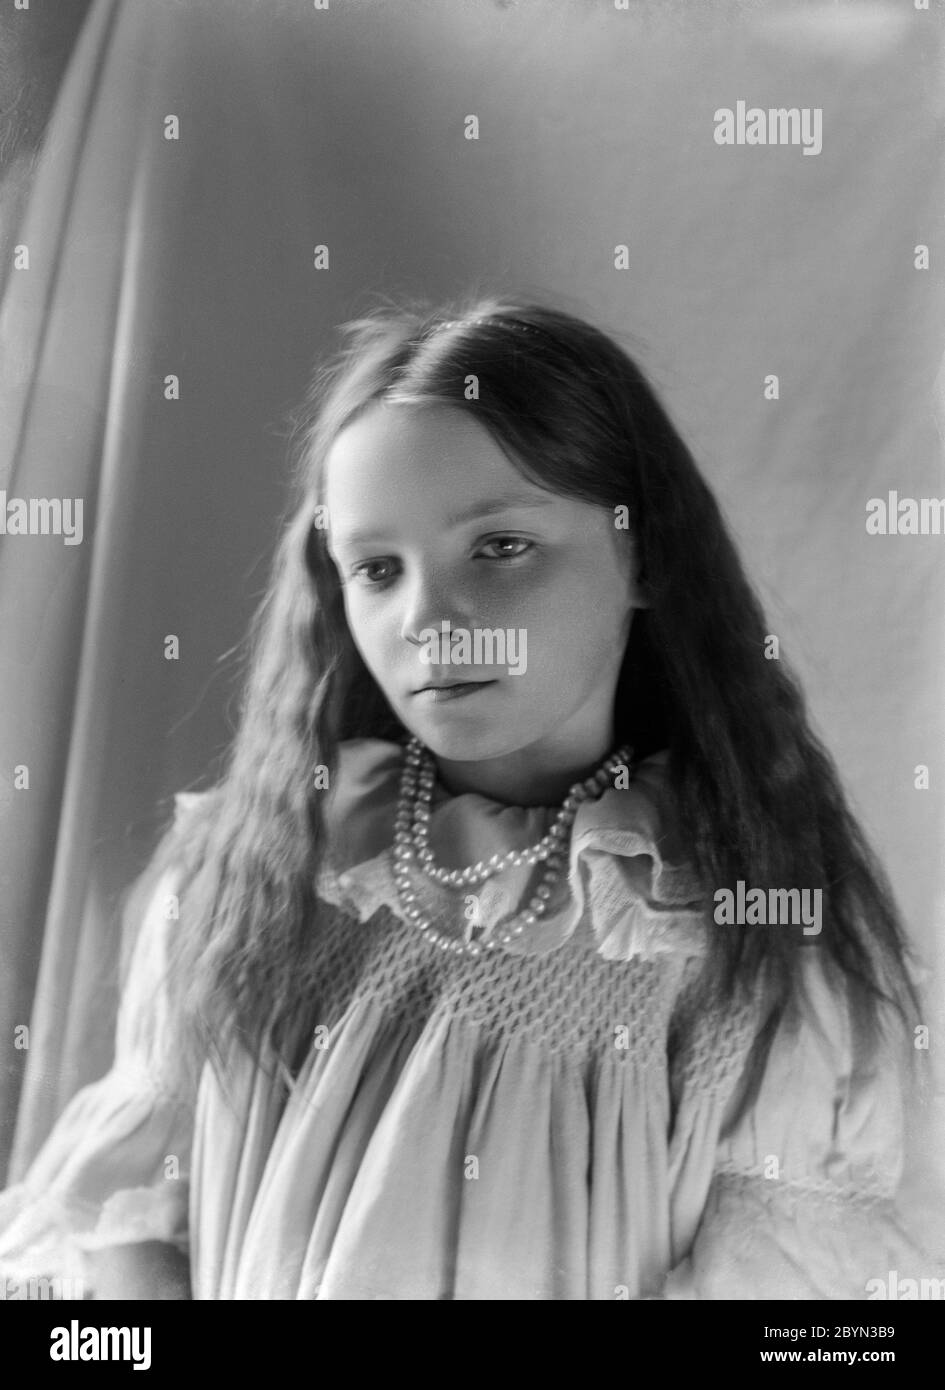 Photographie anglaise vintage noire et blanche d'une jeune fille, de style victorien tardif ou édouardien précoce, montrant la mode et le style de l'époque. Banque D'Images